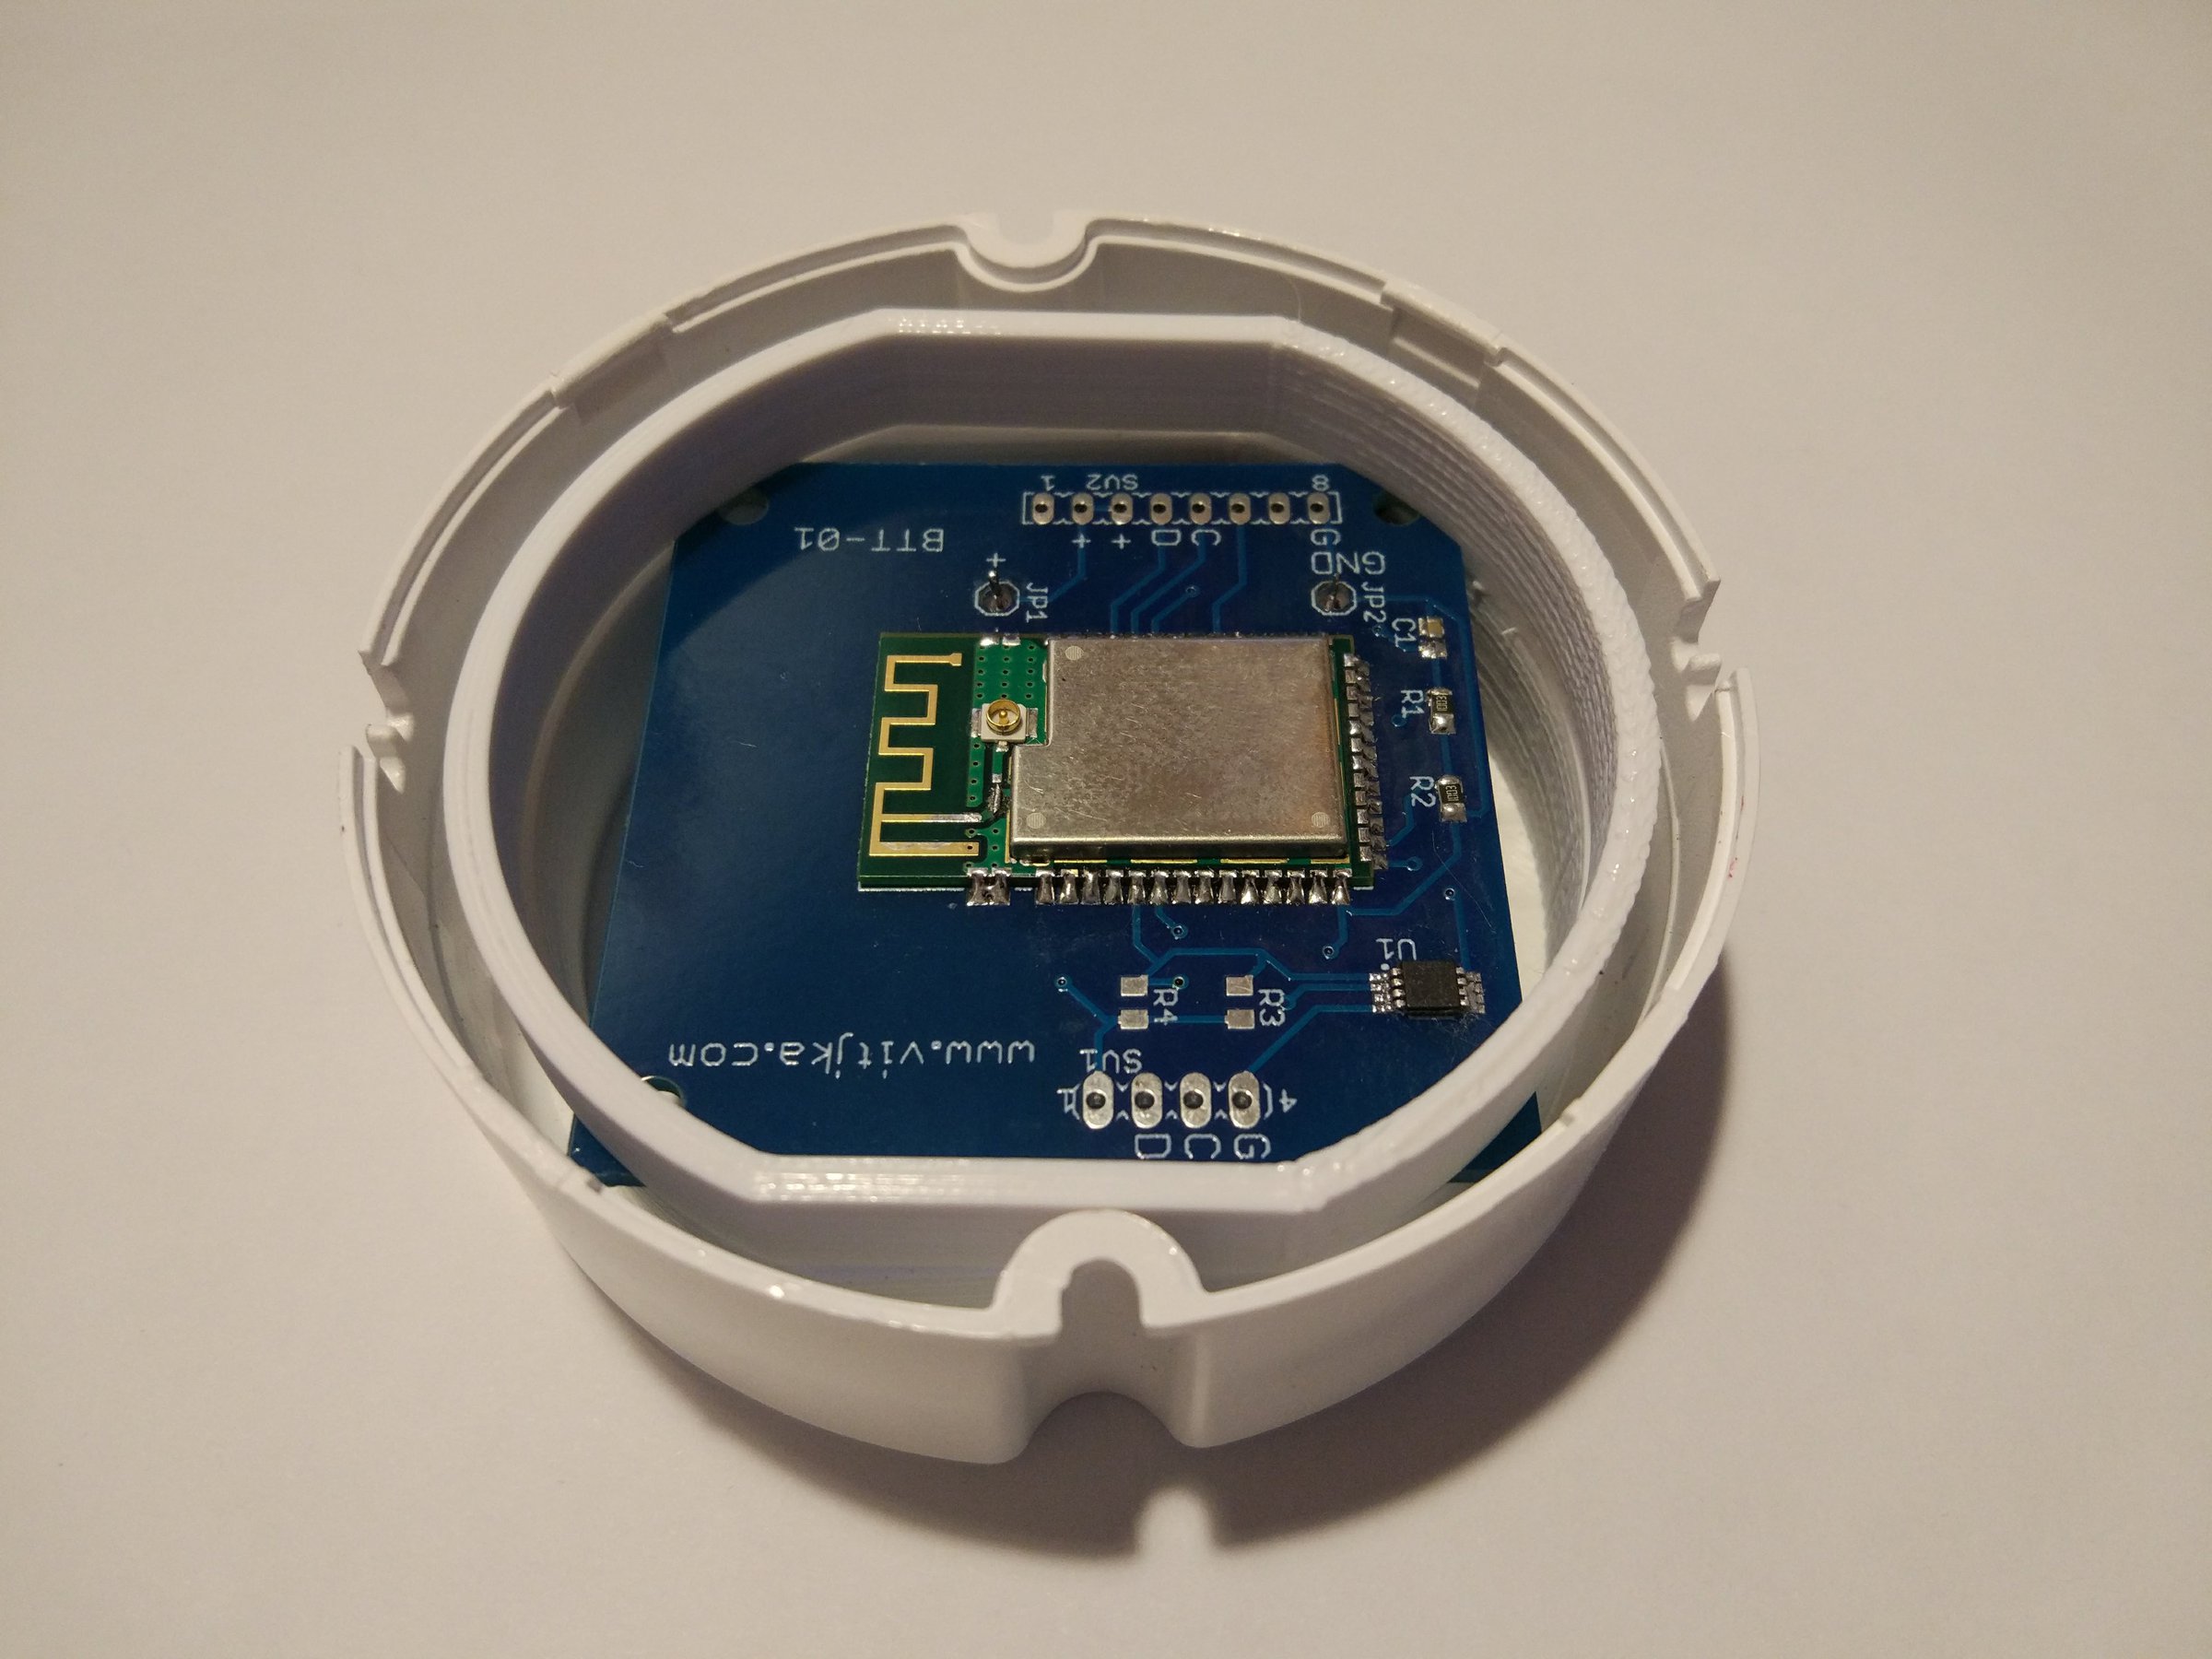 Bluetooth temperature sensor from VITJKA on Tindie